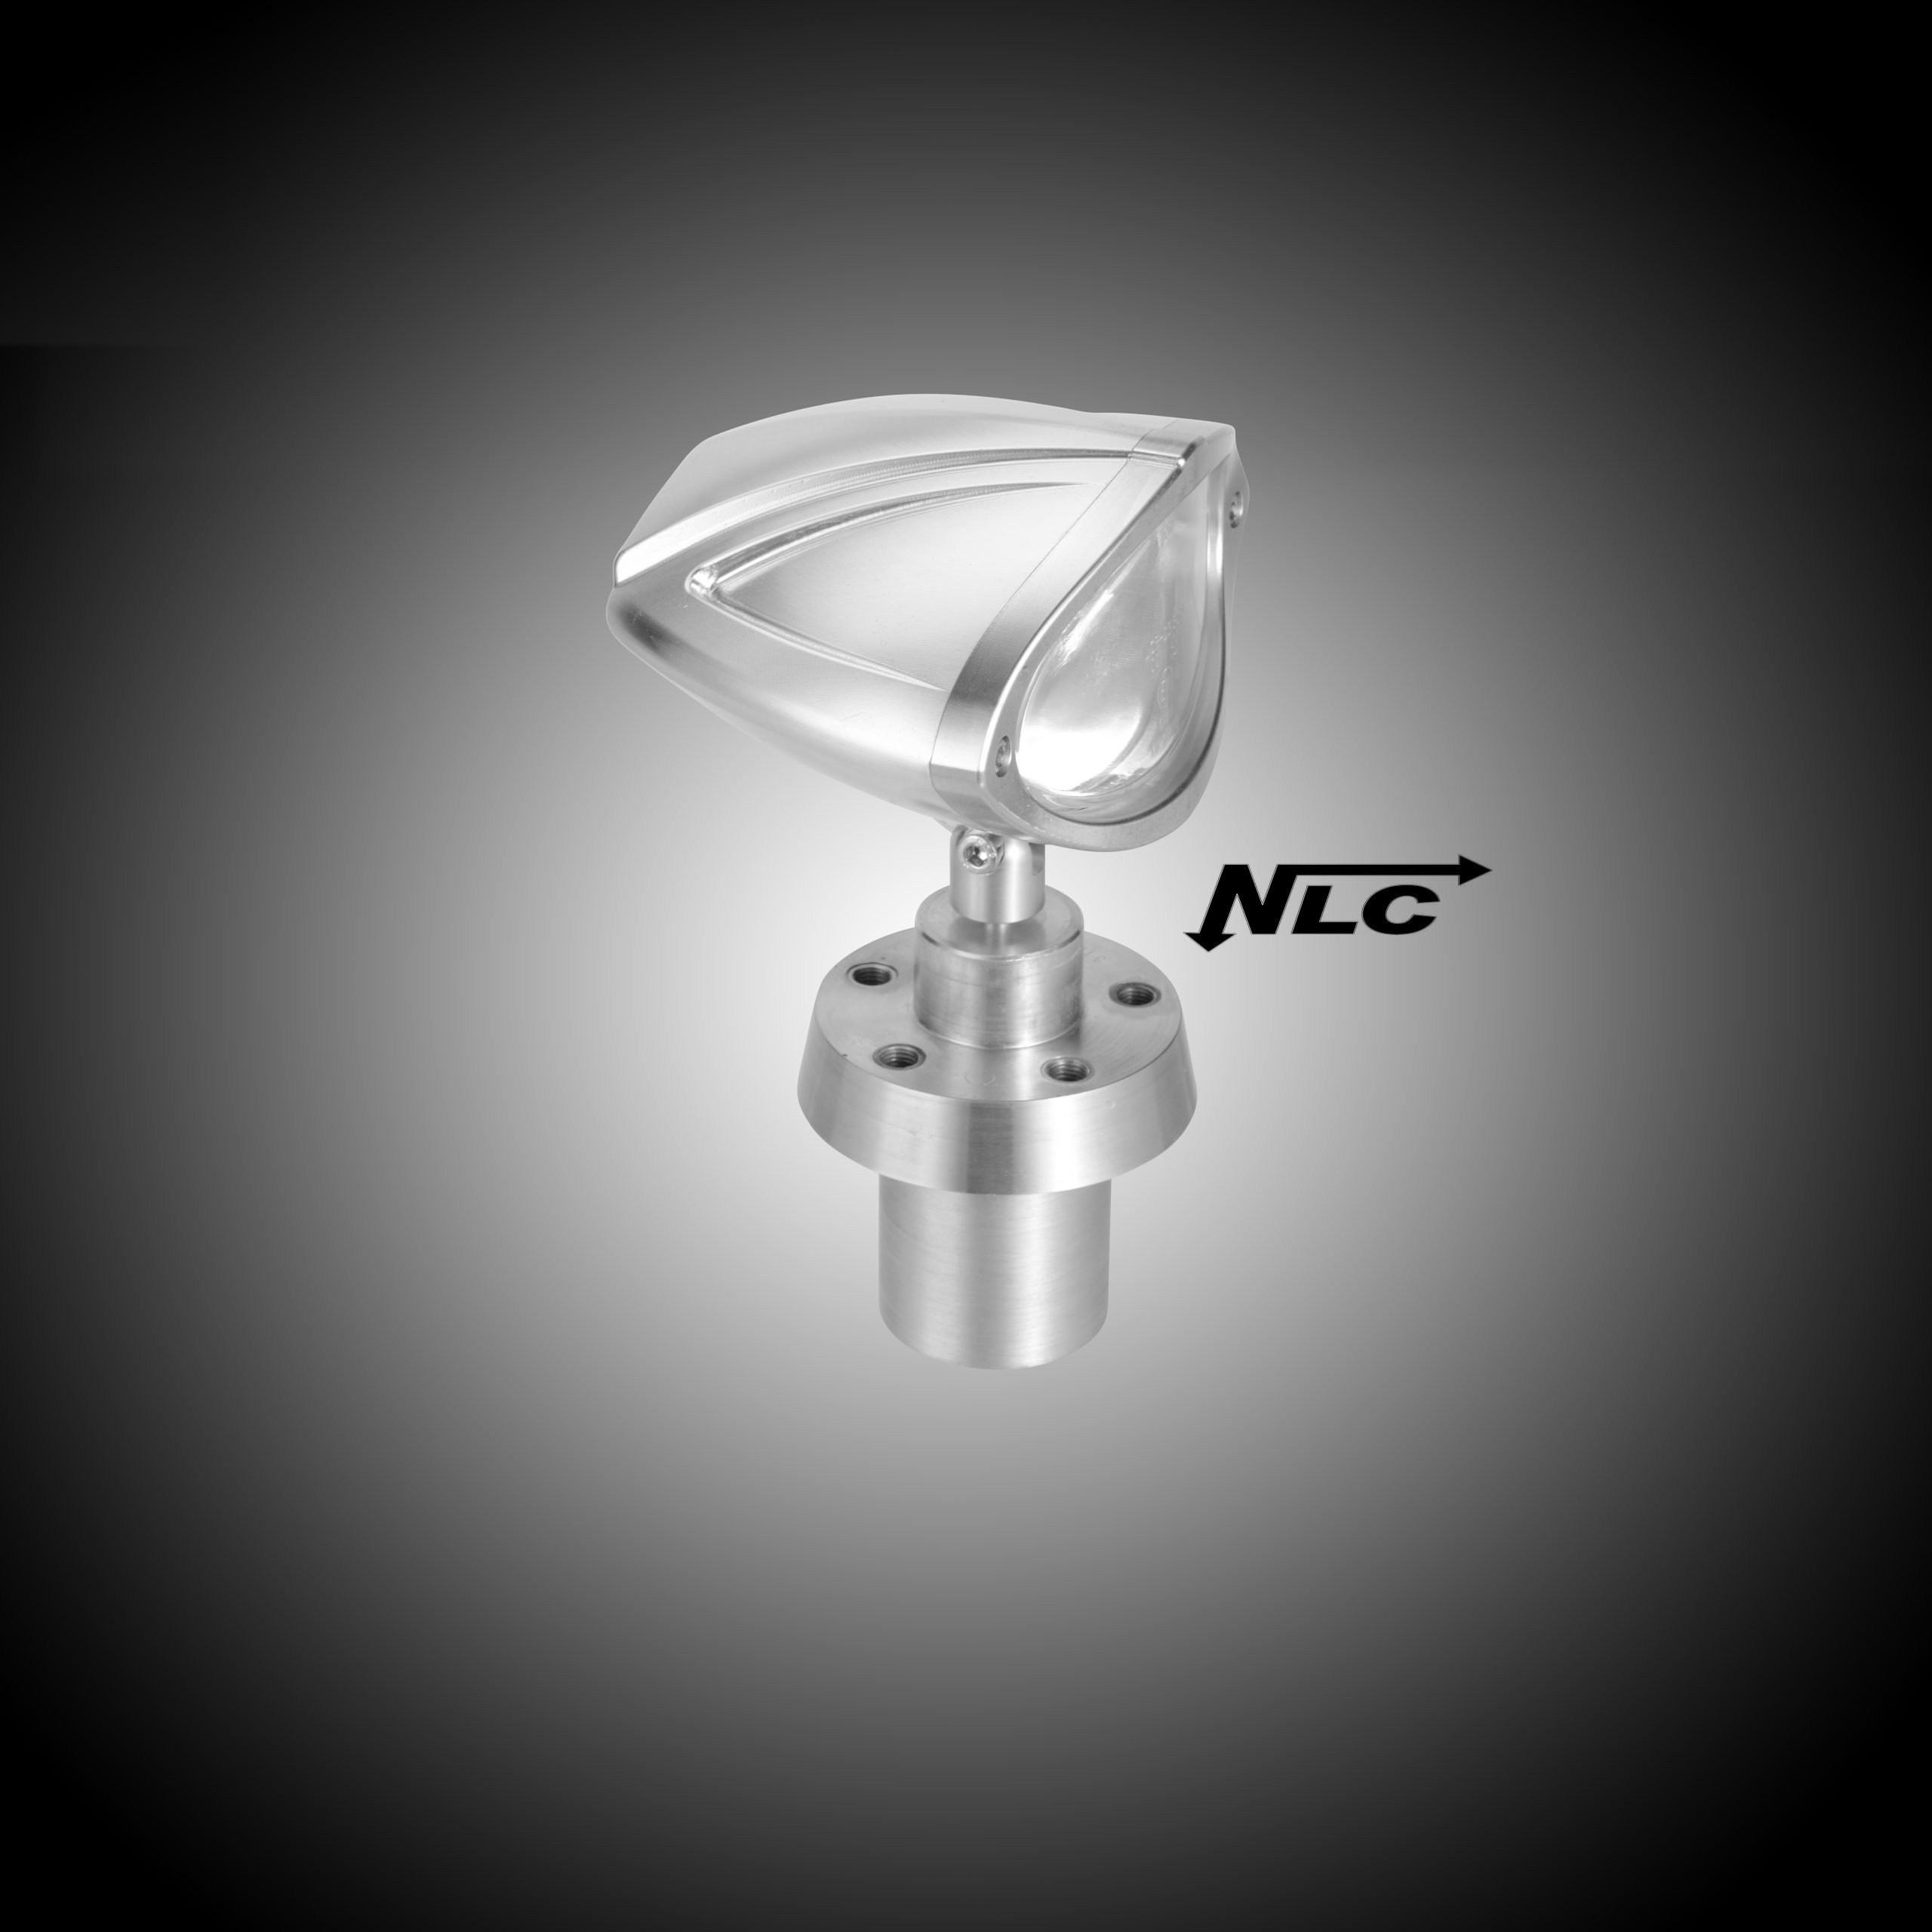 Z-5002/B   NLC 3D Aluminium - Scheinwerfer mit EG Zulassung